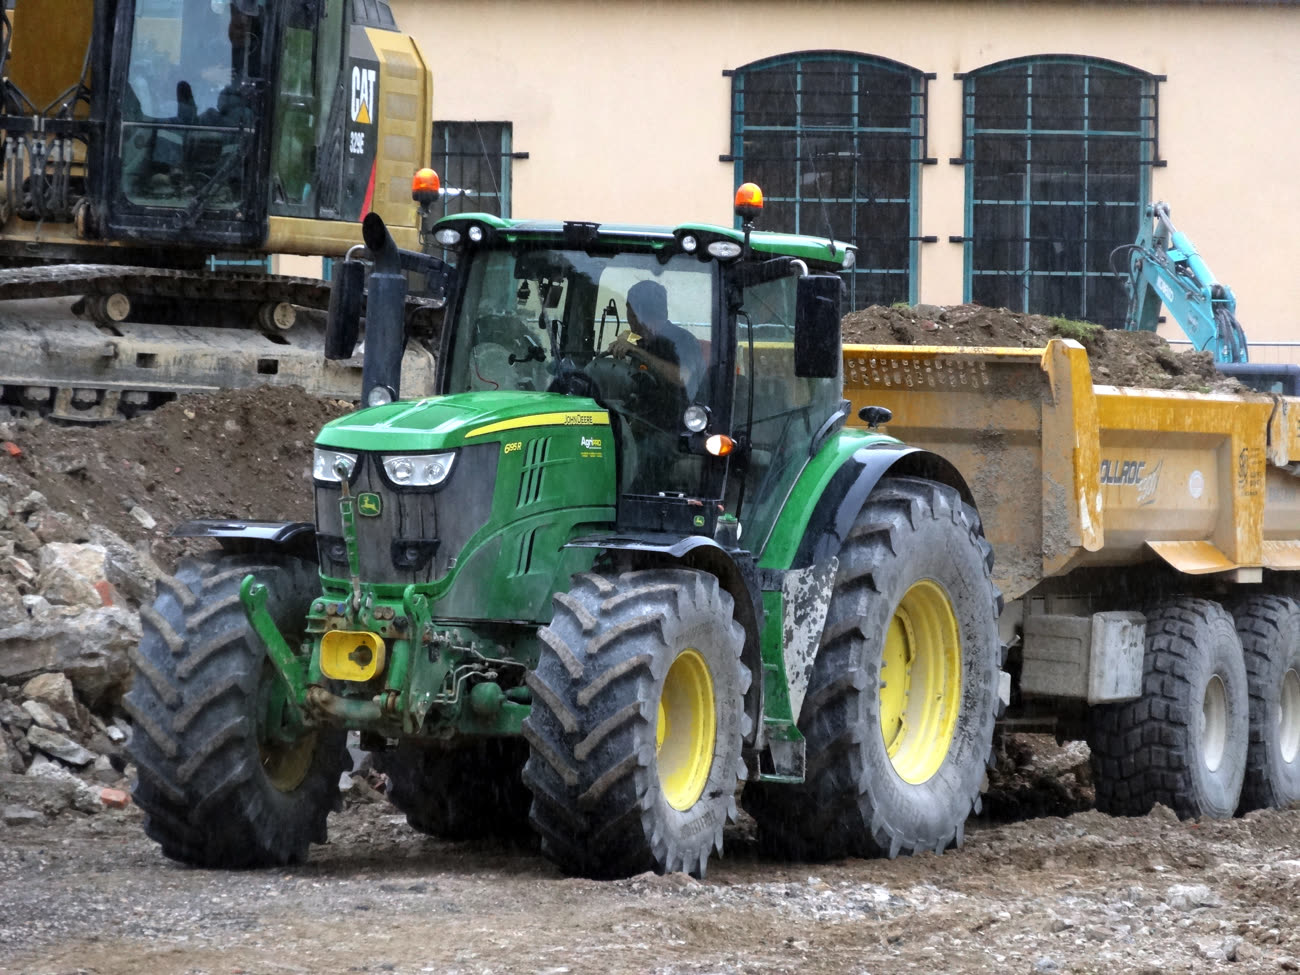 John Deere dévoile la nouvelle génération de tracteurs 6R – FARM Connexion